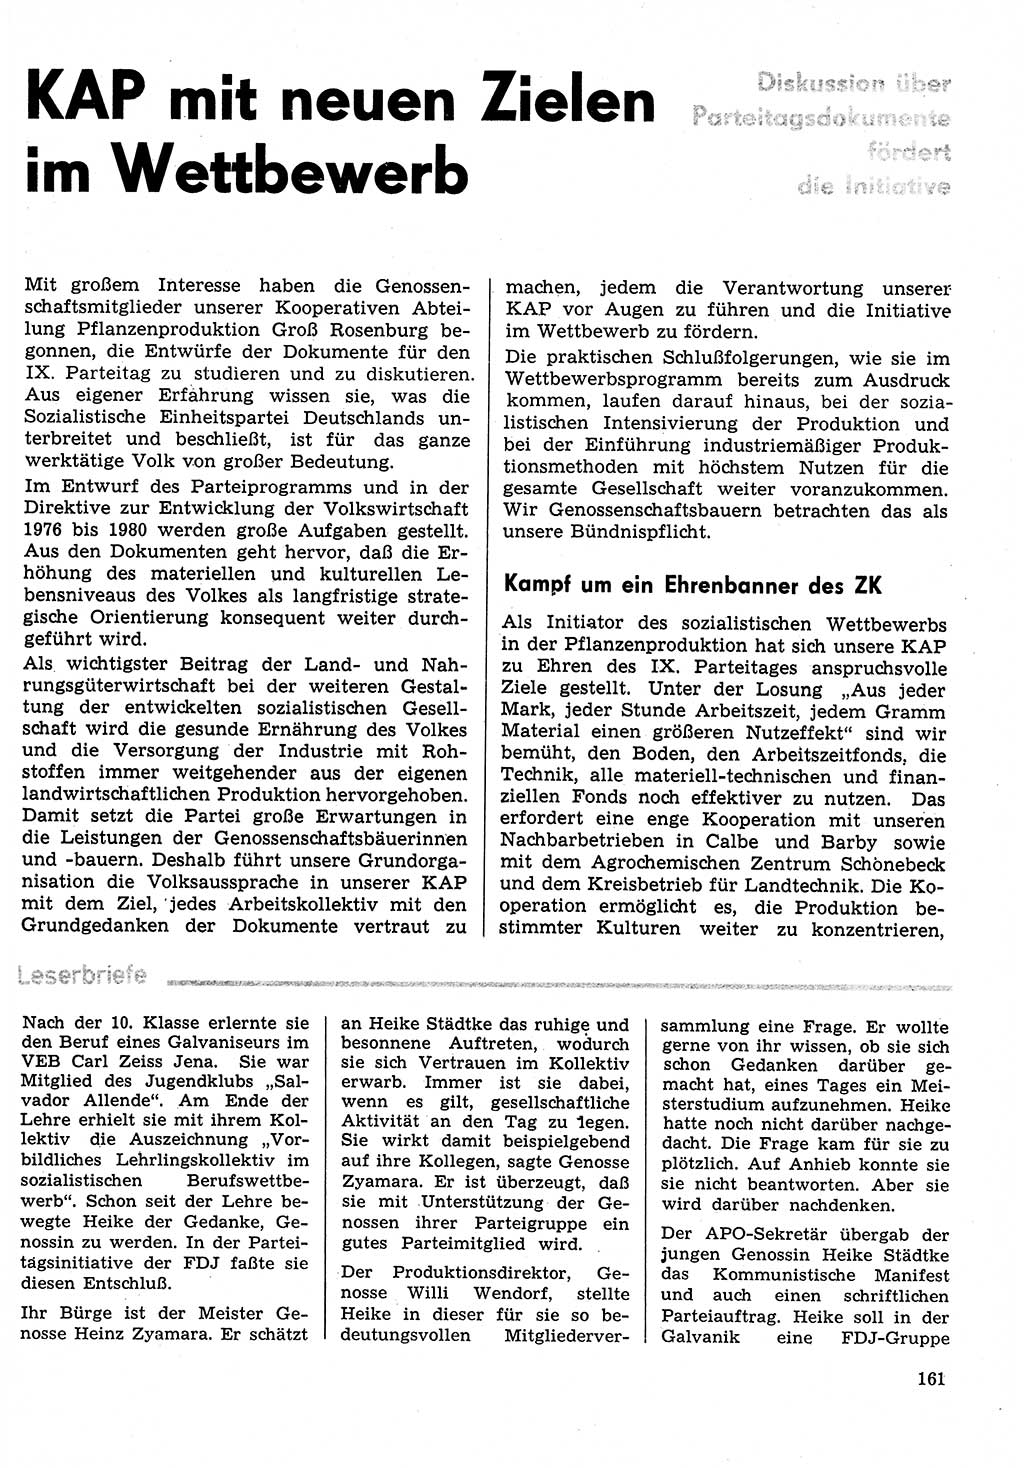 Neuer Weg (NW), Organ des Zentralkomitees (ZK) der SED (Sozialistische Einheitspartei Deutschlands) für Fragen des Parteilebens, 31. Jahrgang [Deutsche Demokratische Republik (DDR)] 1976, Seite 161 (NW ZK SED DDR 1976, S. 161)